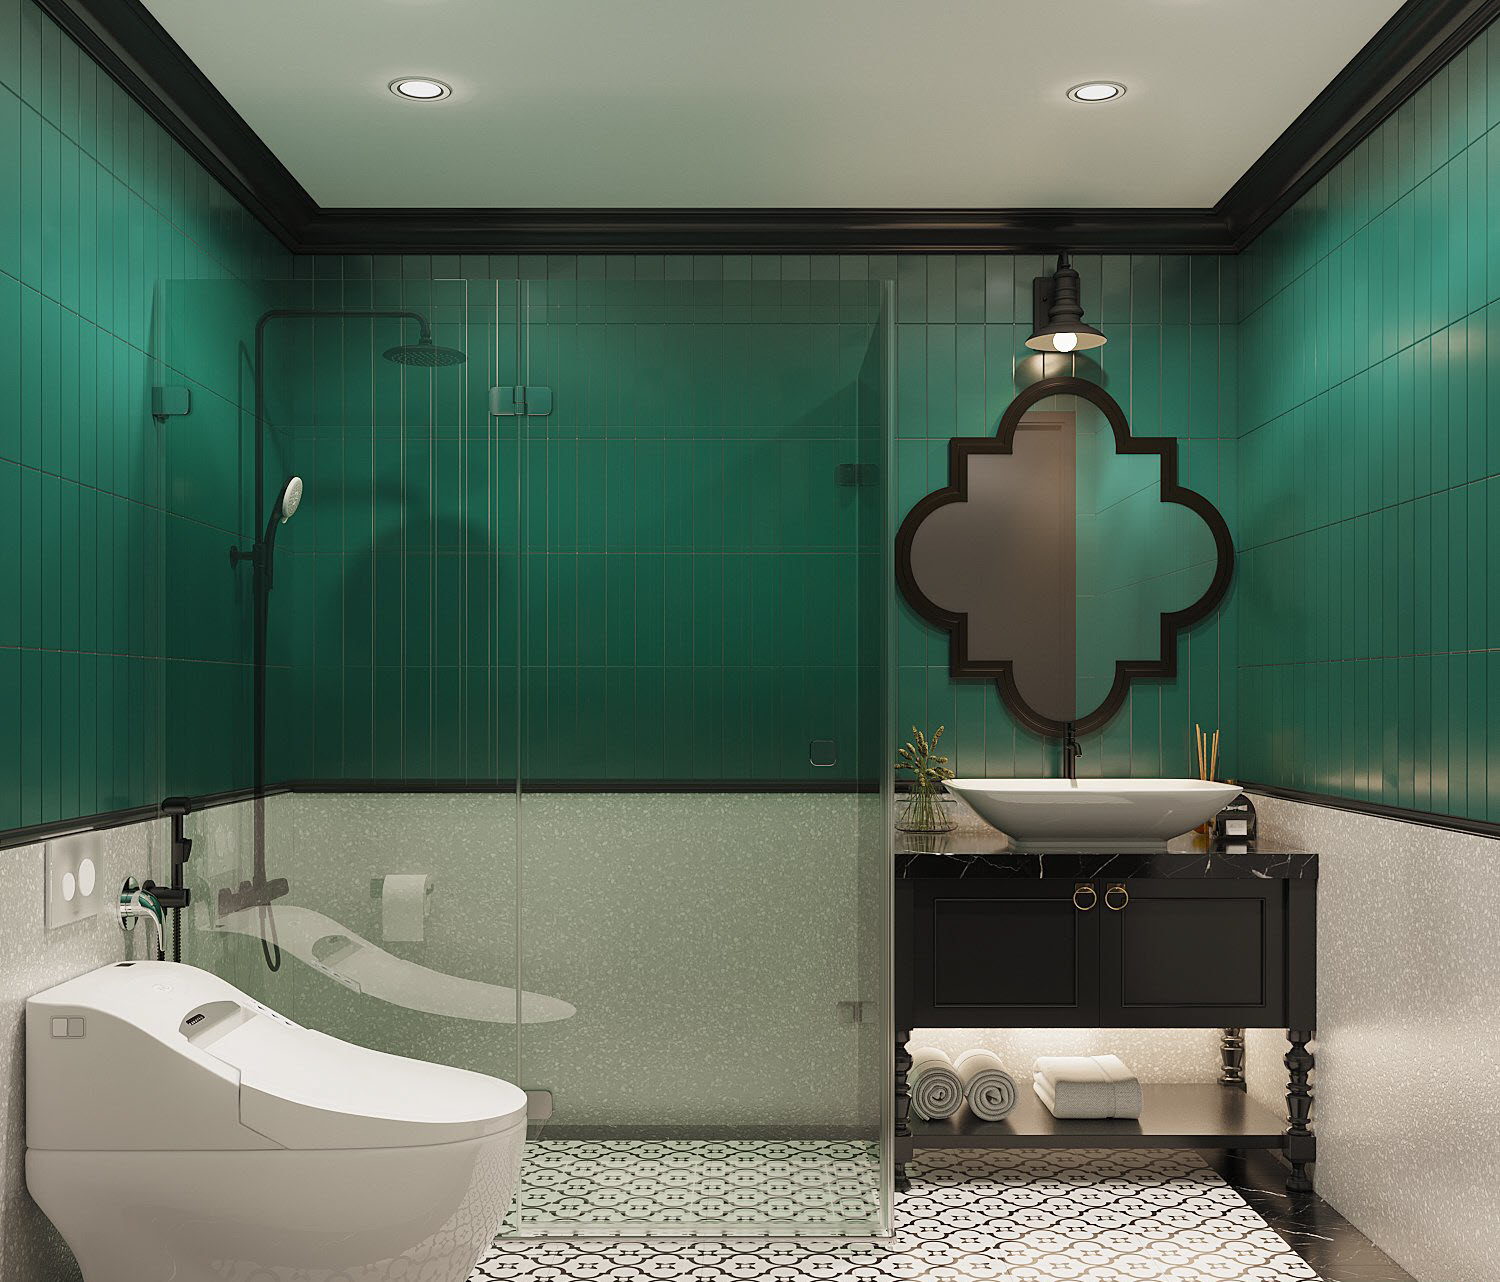 Phòng tắm màu xanh lá khác với thiết kế nội thất tương tự.